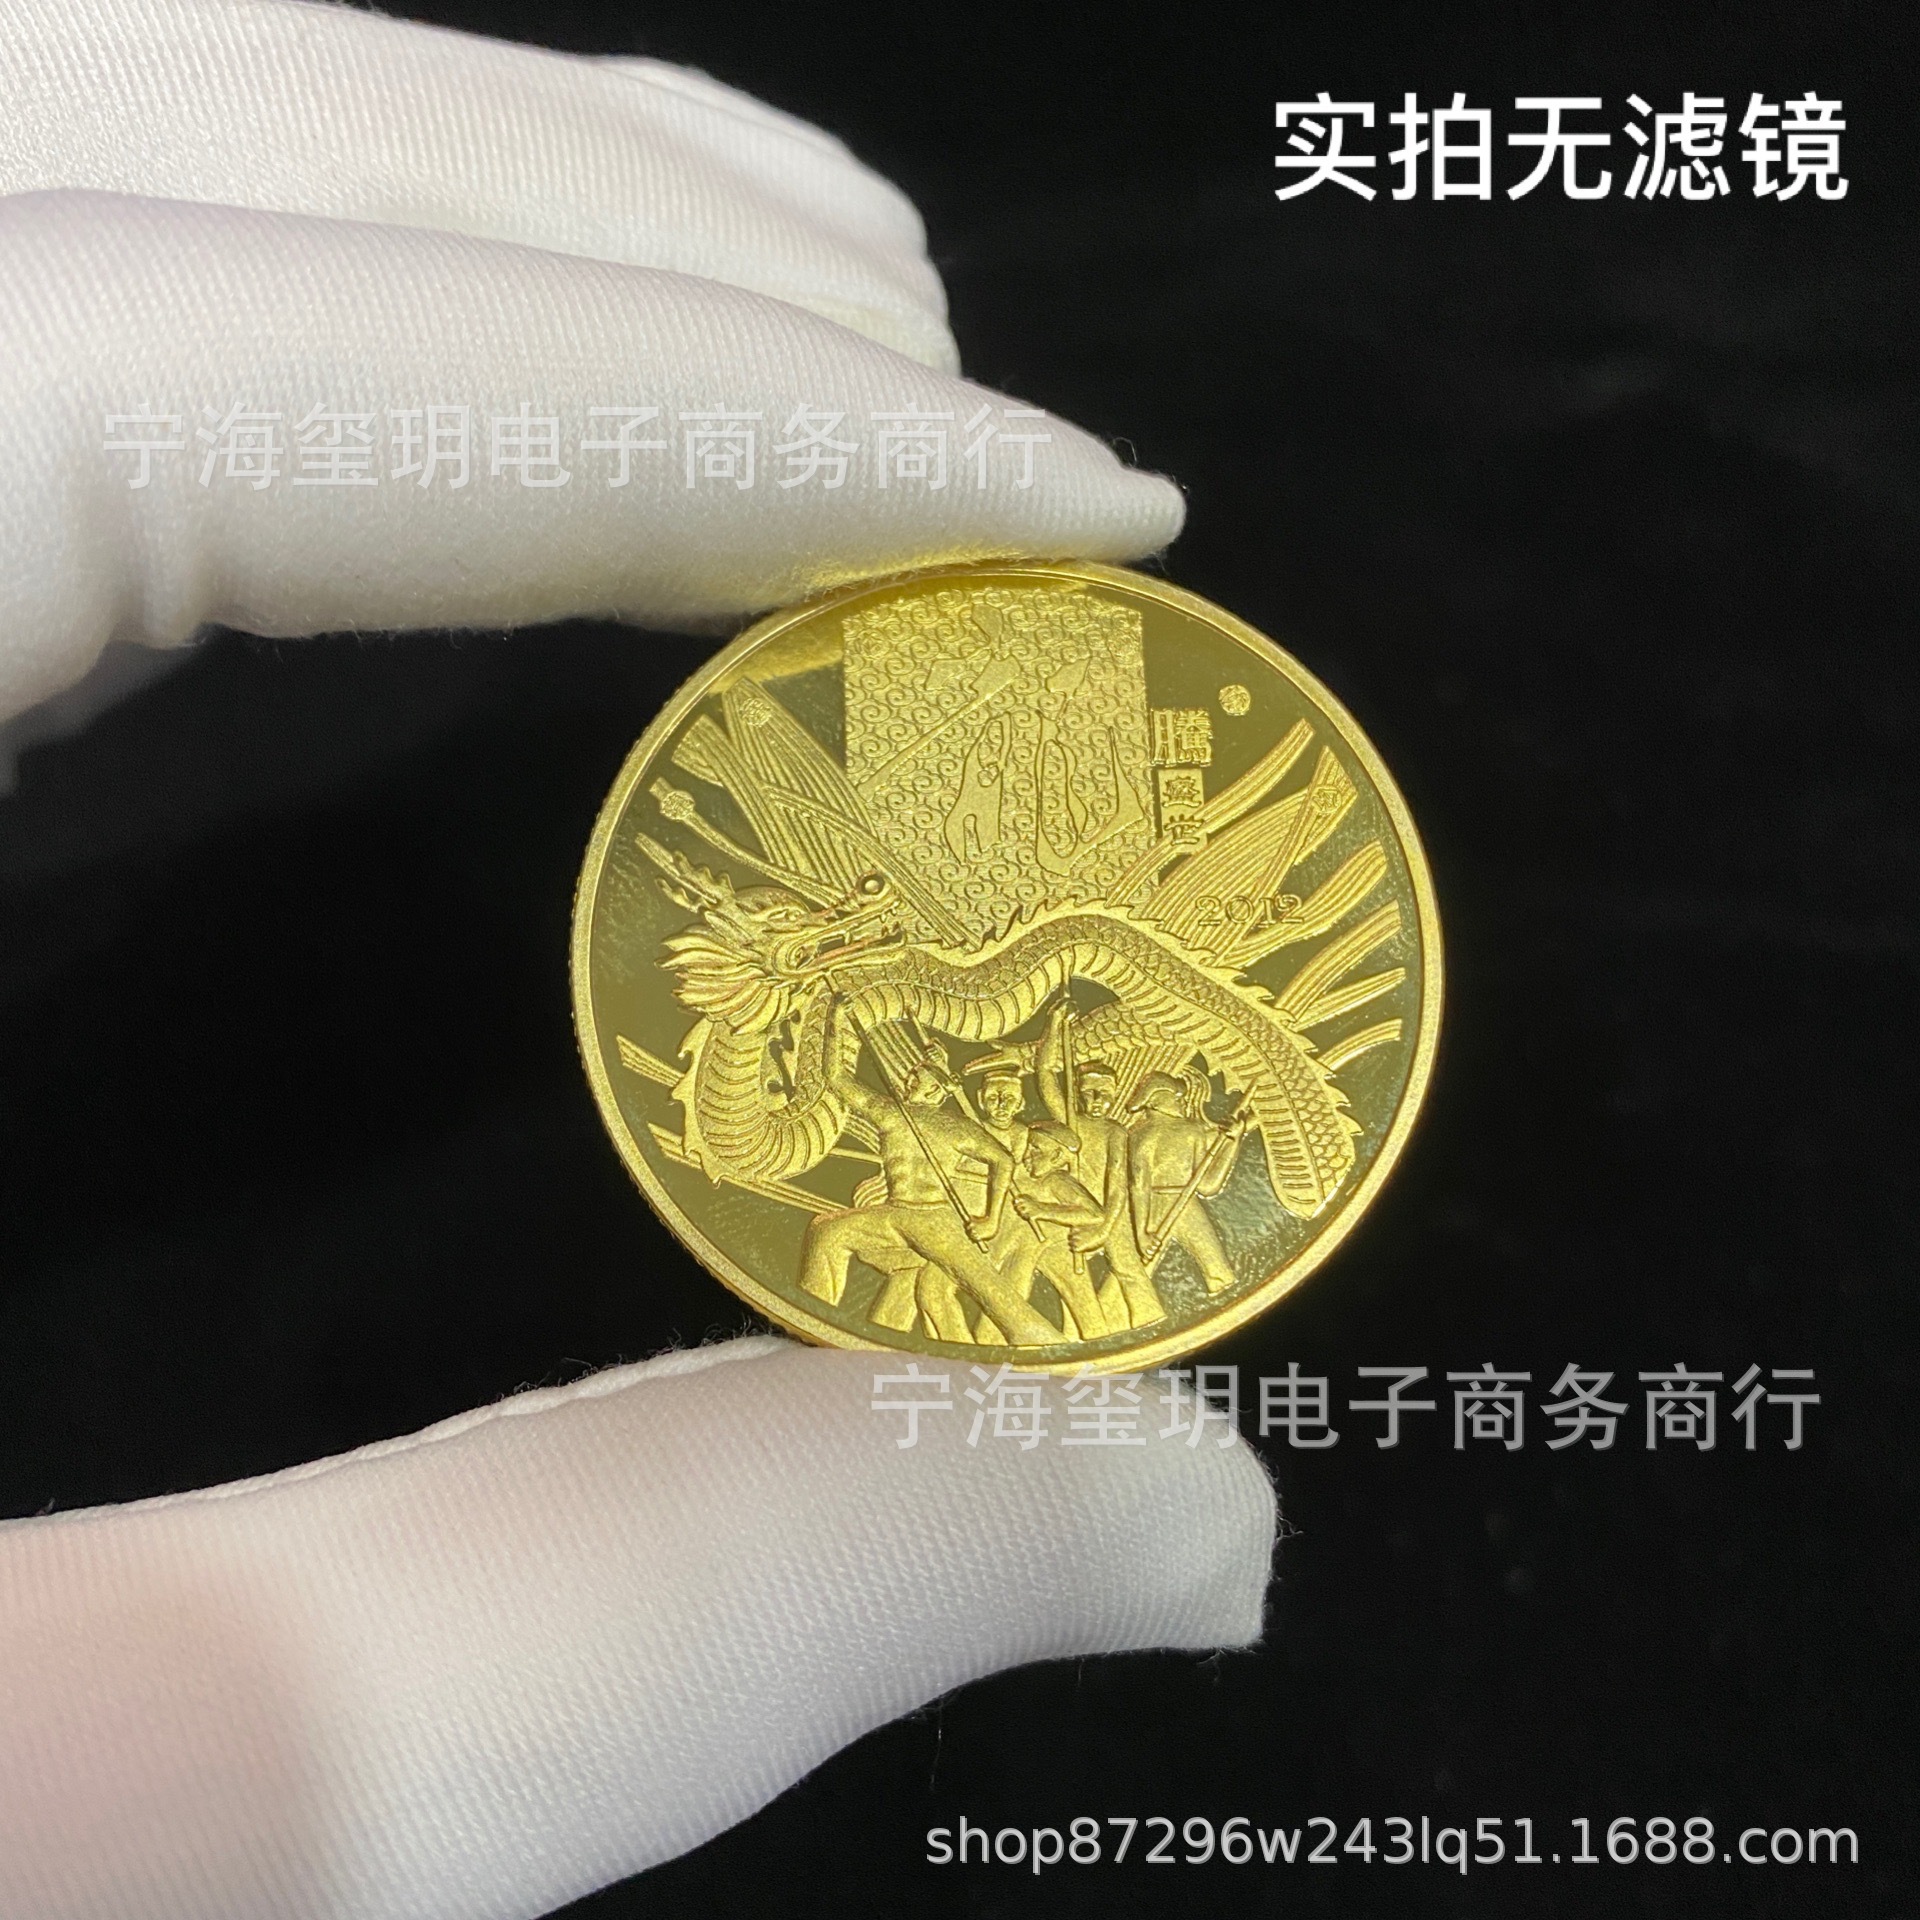 2012龙腾盛世纪念币图片